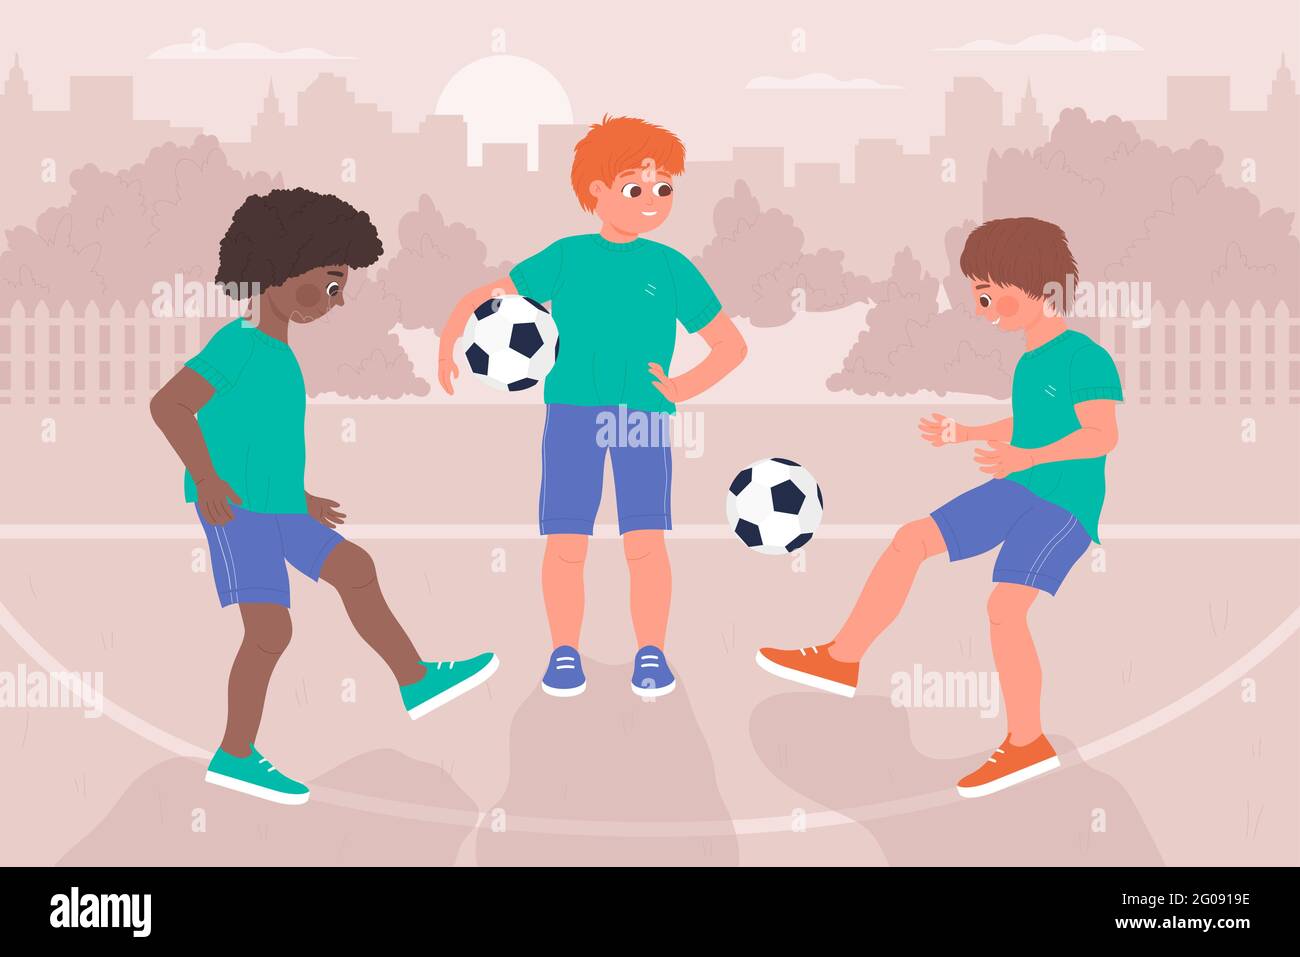 Kinder spielen Ball, Fußball gesund Sport Aktivität Vektor Illustration. Cartoon glückliche Spieler Charaktere haben Spaß, lustige Jungen Kinder Fußball spielen zusammen auf dem Sportplatz im Schulhof Hintergrund Stock Vektor